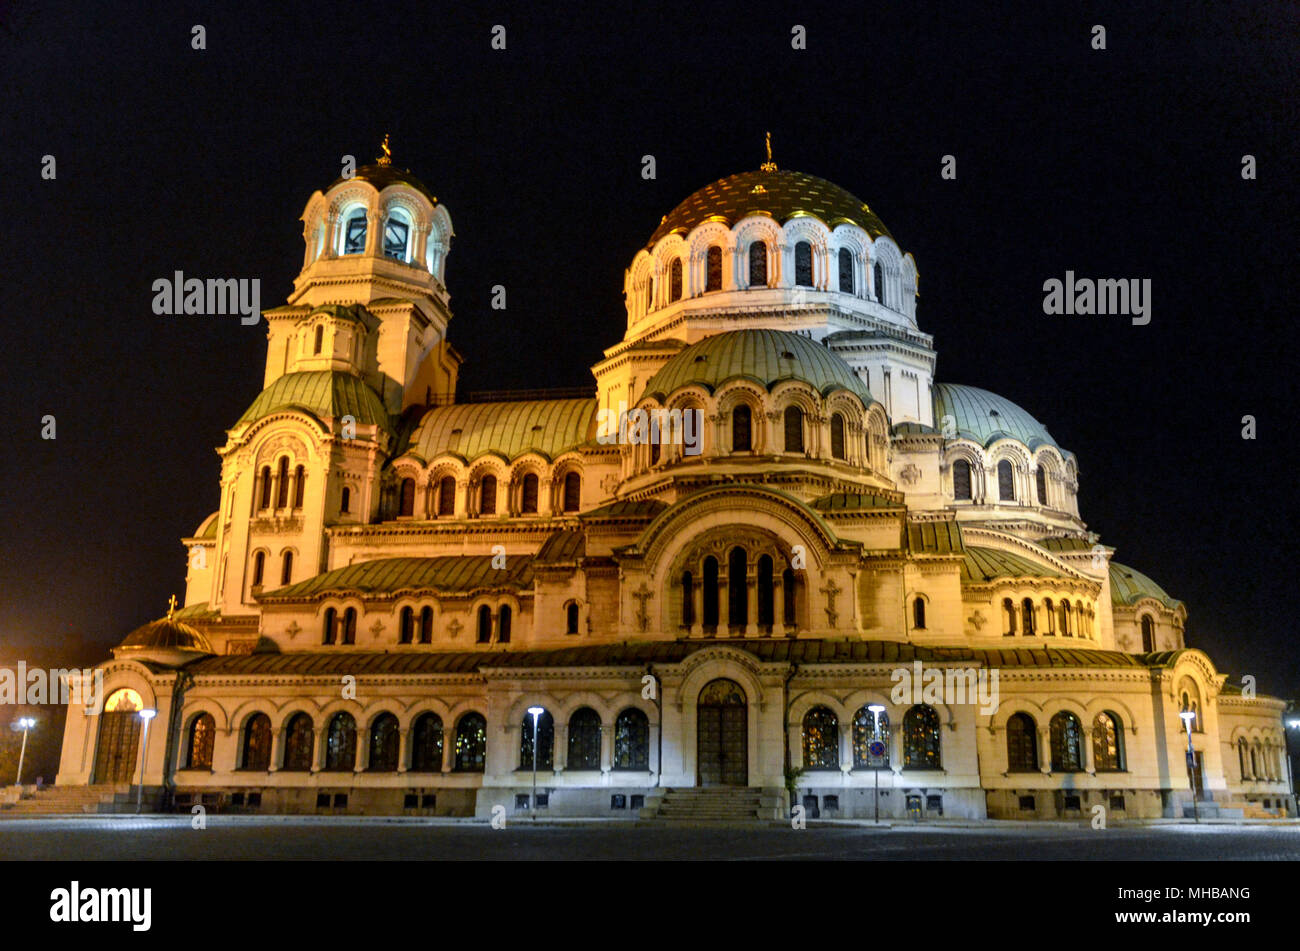 La cathédrale Alexandre Nevsky de nuit, Sofia, Bulgarie Banque D'Images